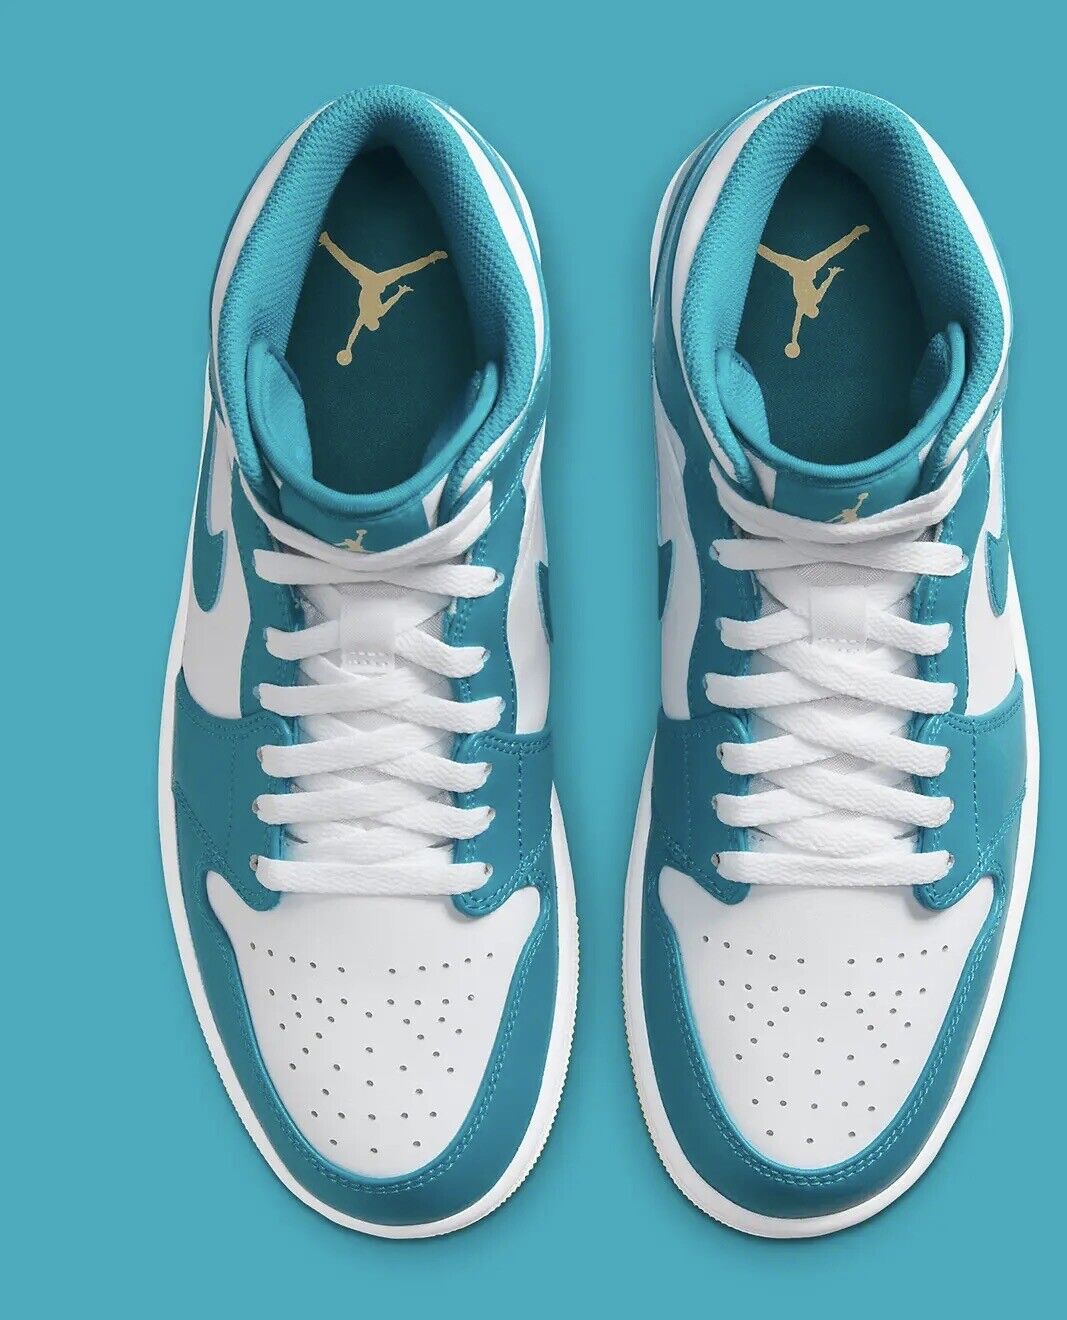 Nike Air Jordan 1 Mid Shoes "Aquatone" White Celestial Gold DQ8426-400 Men's NEW